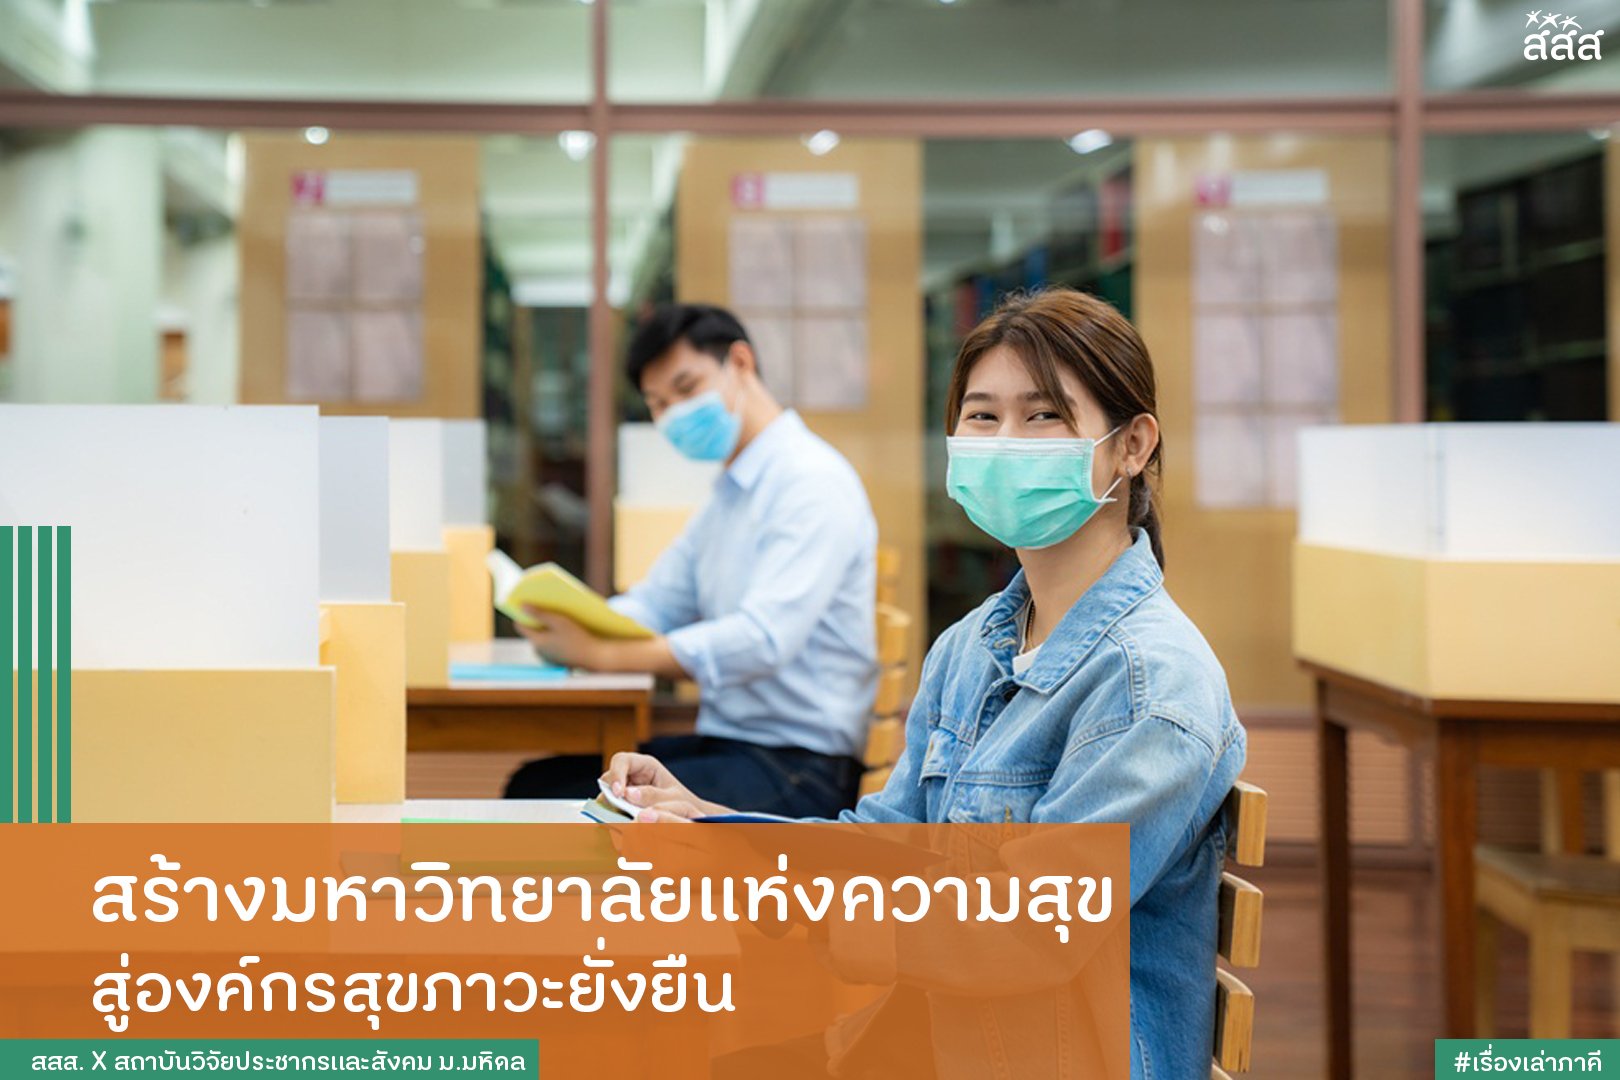 สร้างมหาวิทยาลัยแห่งความสุข สู่องค์กรสุขภาวะยั่งยืน thaihealth